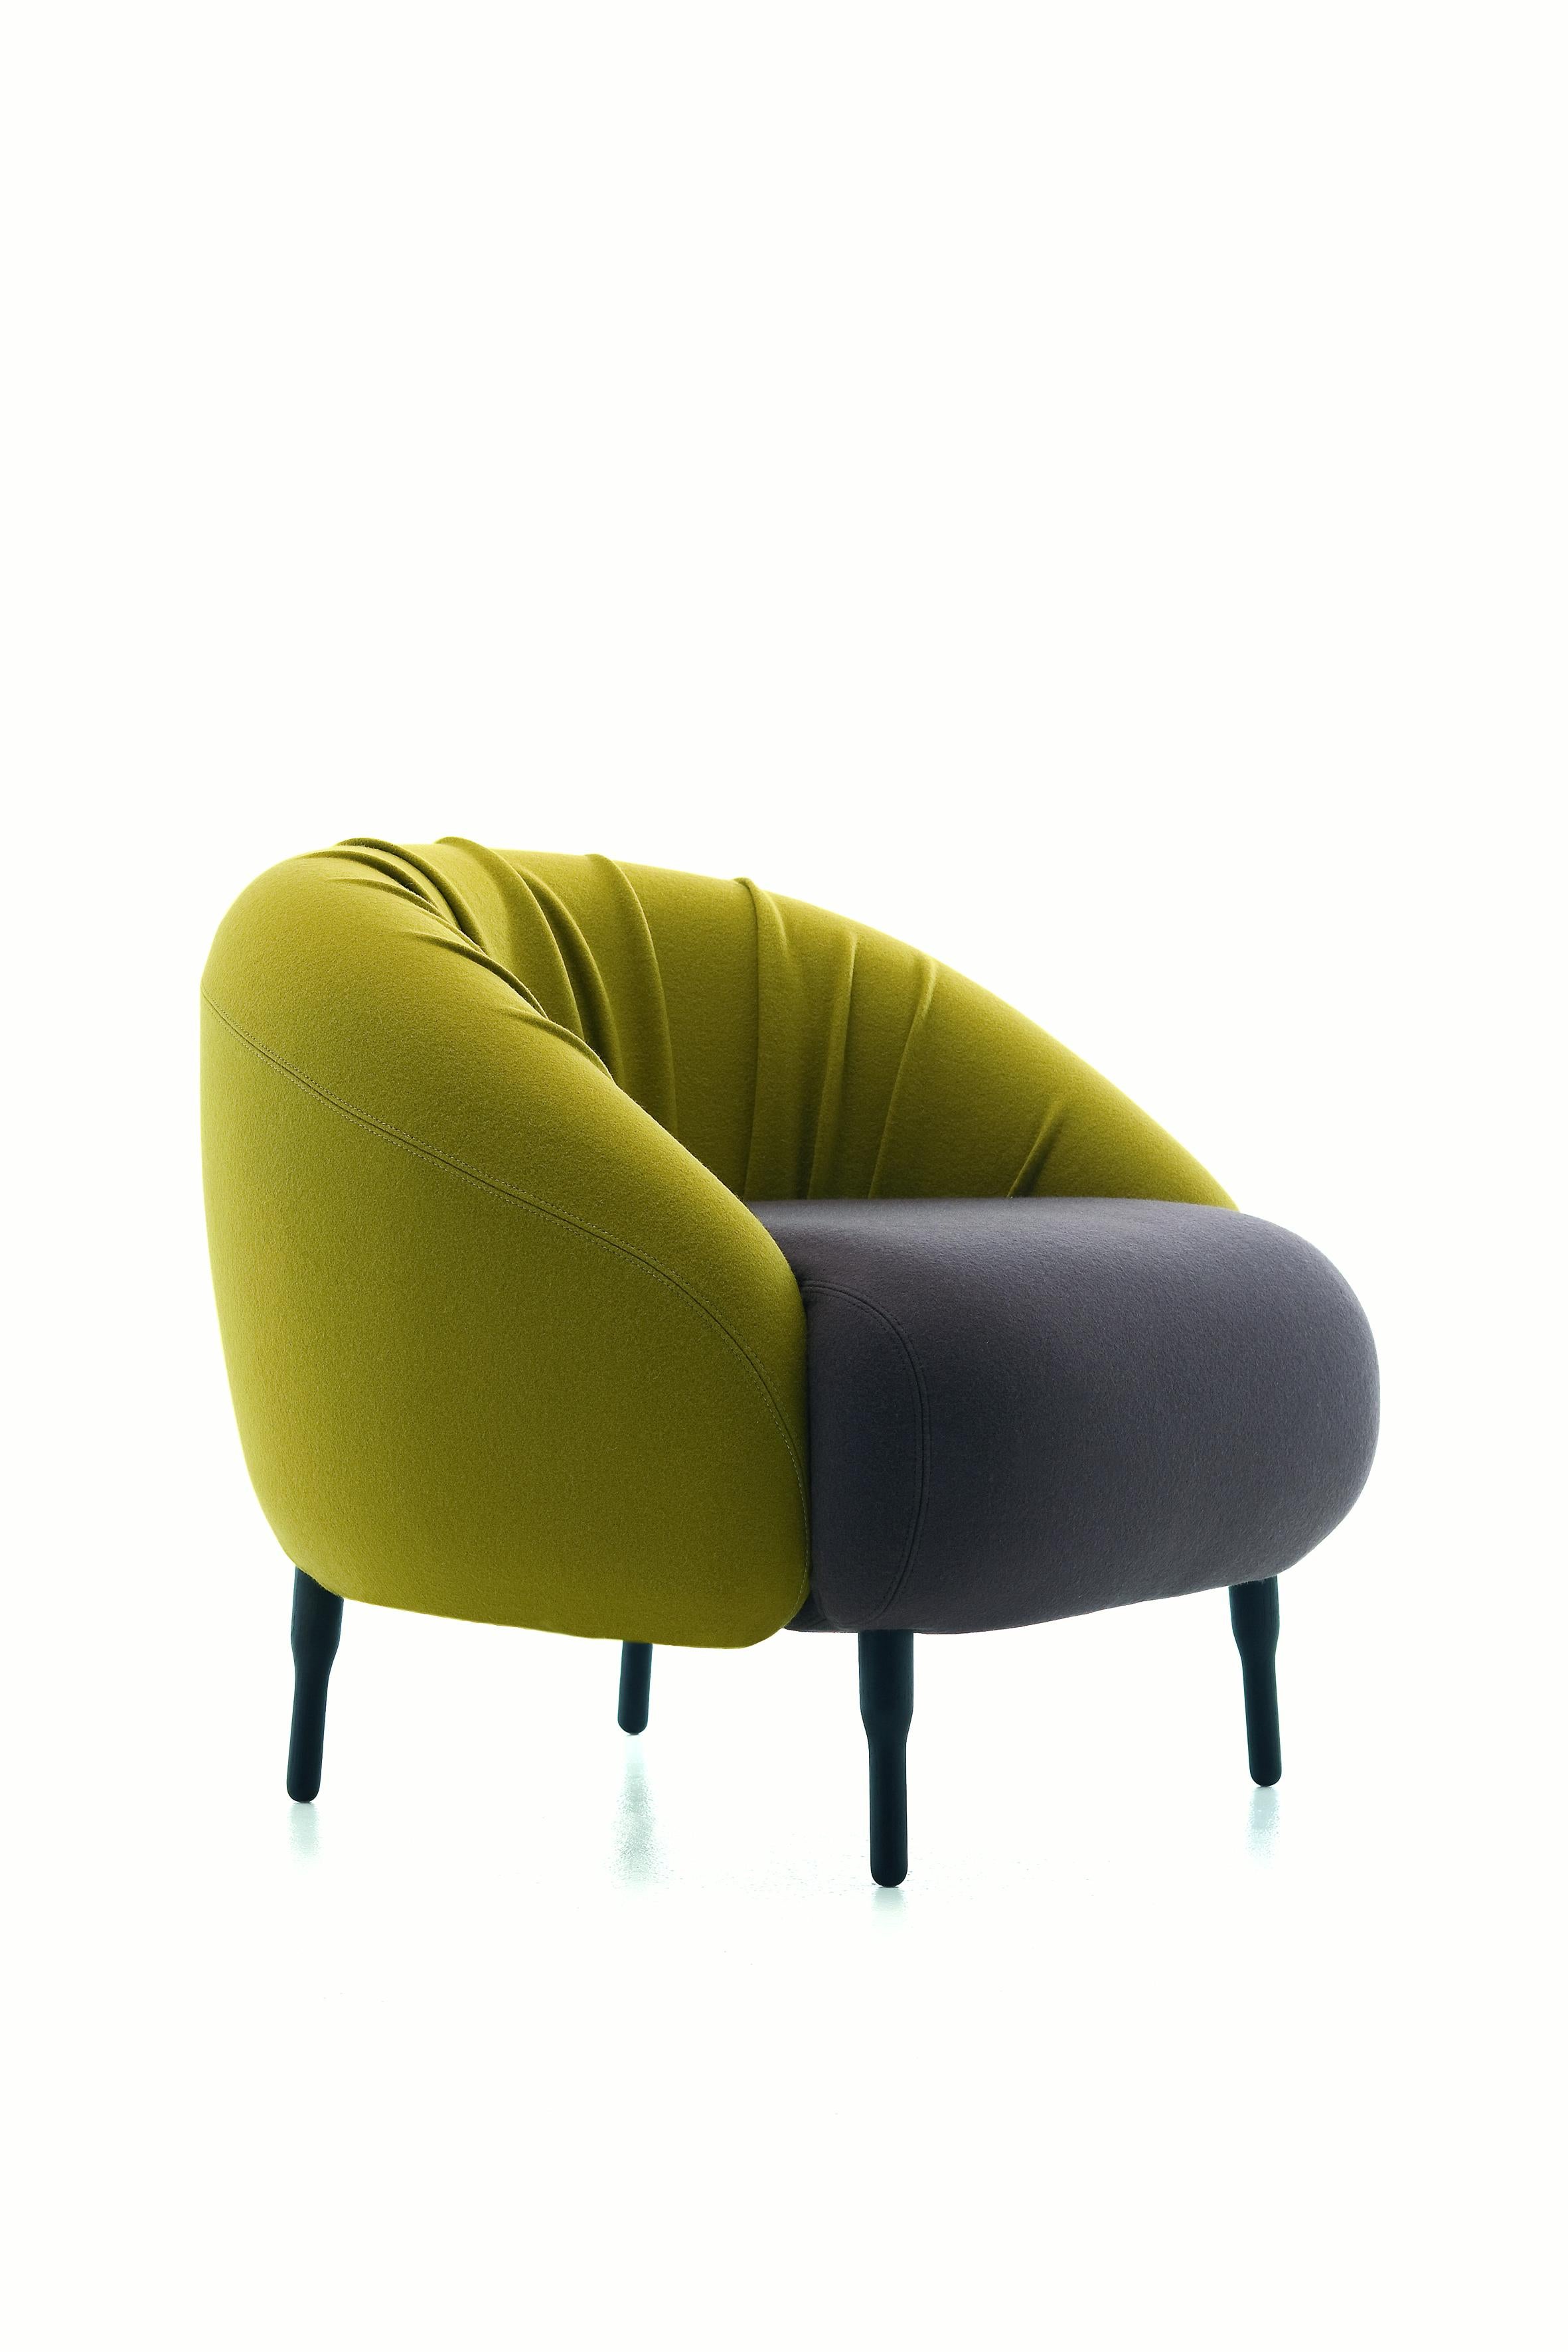 Wir stellen den vielseitigen und sehr freundlichen Bump Chair vor, die perfekte Lösung für Hotels und Lounges. Erhältlich in alternativen Polstervarianten – eine mit klassischer, fester Passform und die andere mit überschüssigen Stoffen auf der